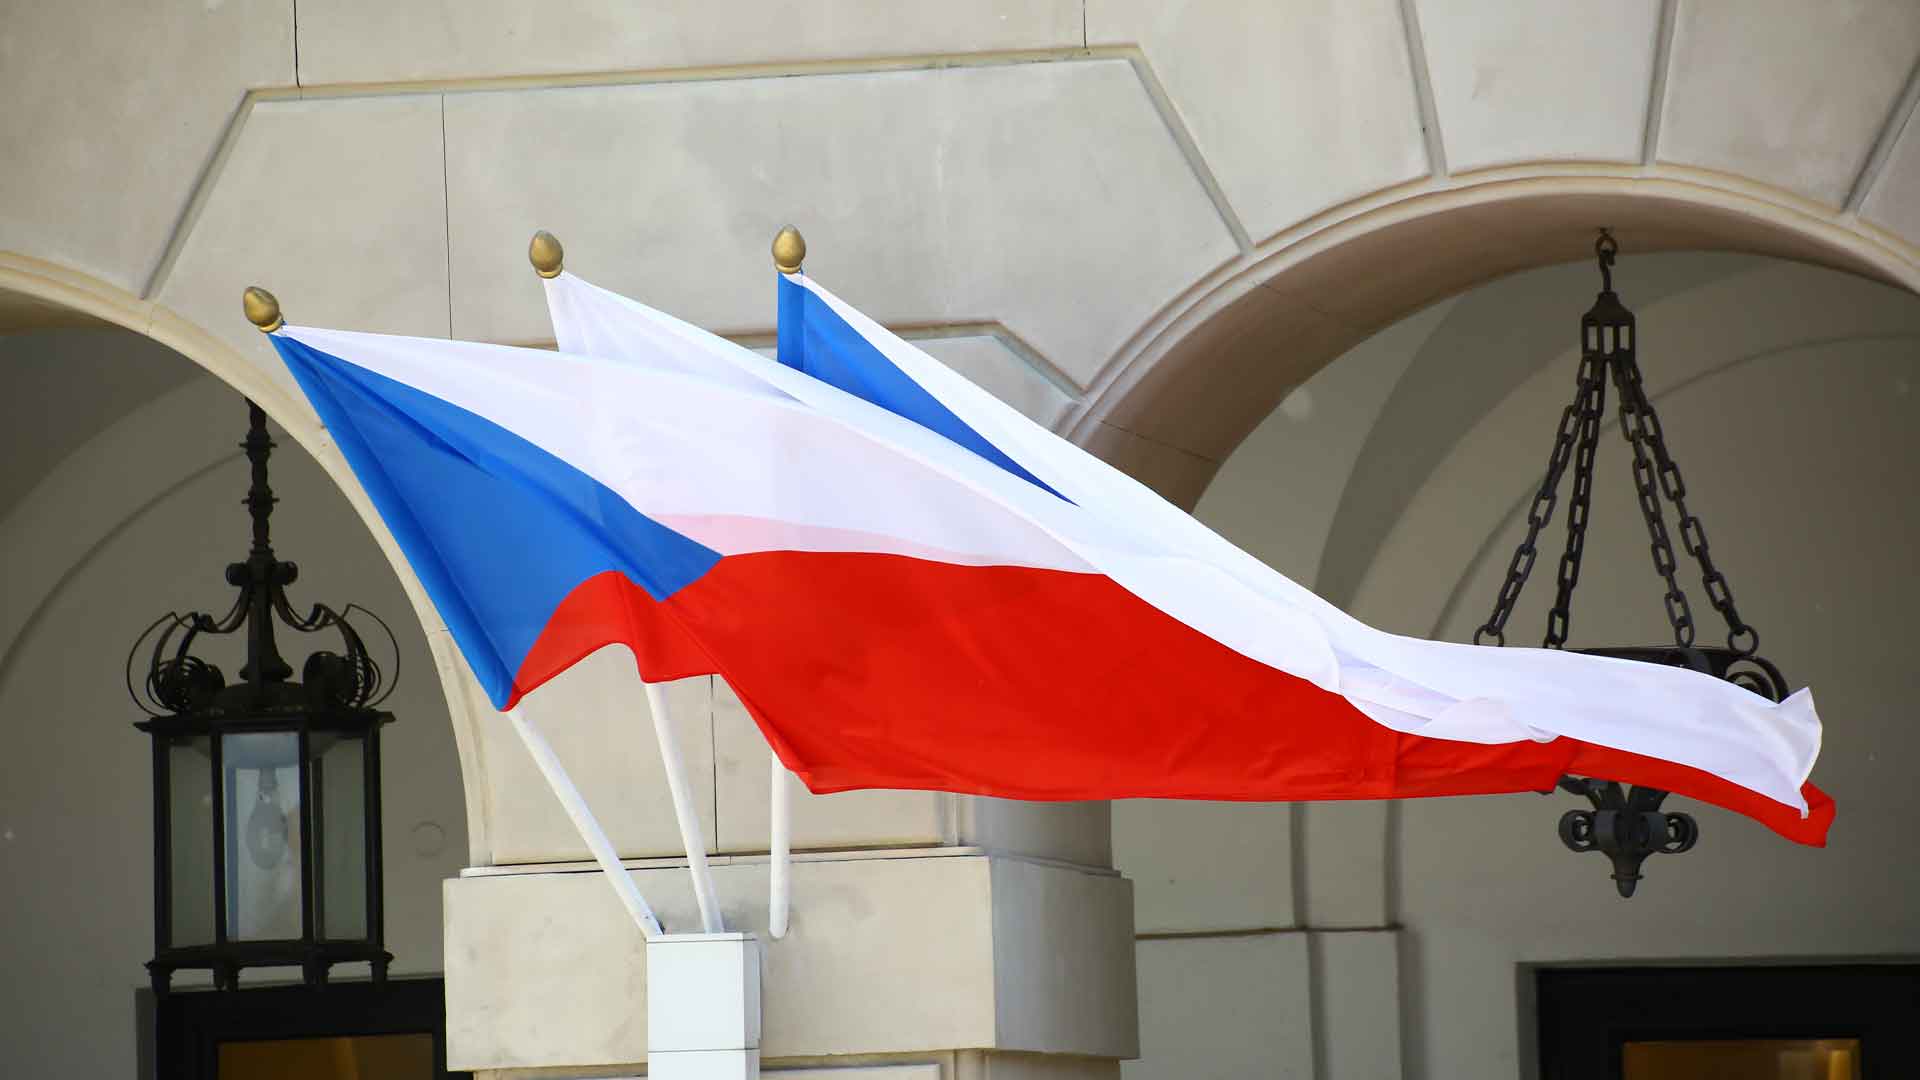 Ситуация не требует выдворения российских дипломатов из страны, заявил чешский премьер Андрей Бабиш Фото: © GLOBAL LOOK press / Jakob Ratz